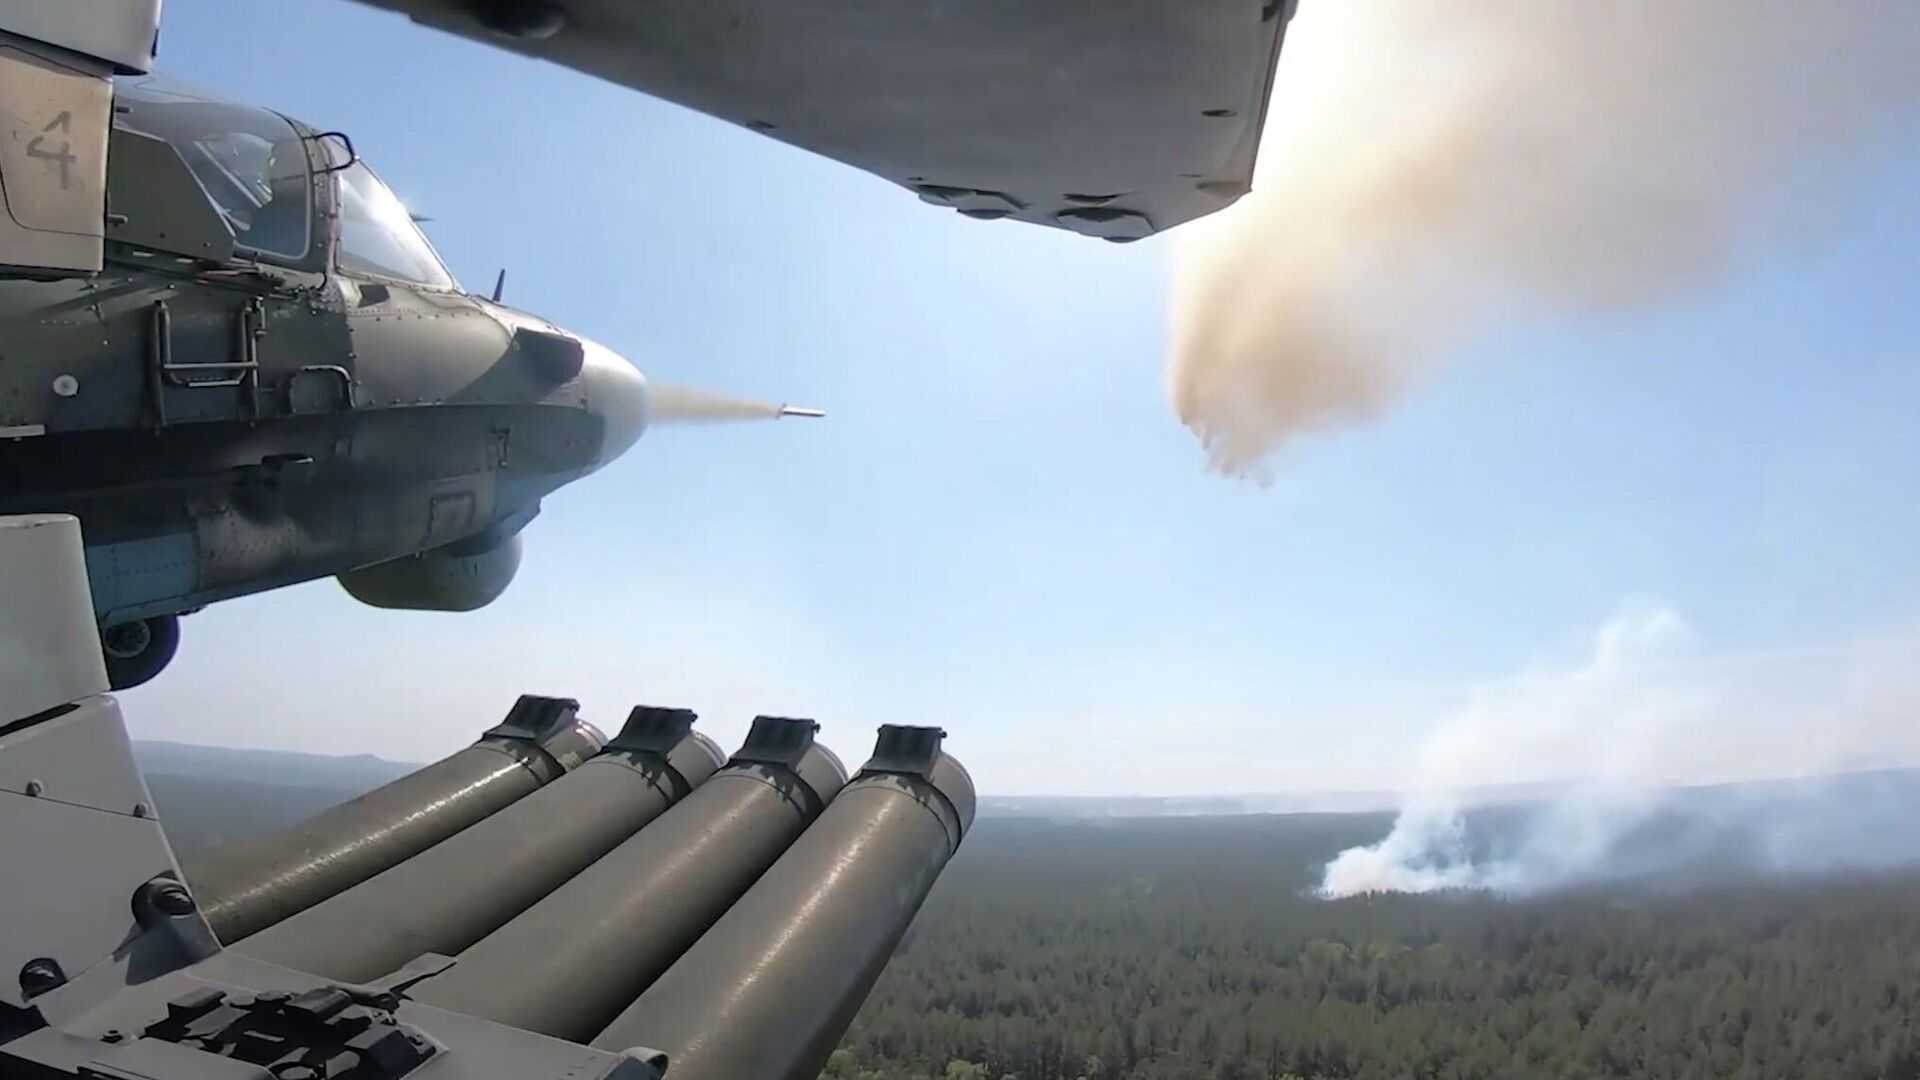 Ուկրաինայի ՀՕՊ համակարգերի արդյունավետությունը կտրուկ ընկել է. խոցվել է ռուսական հրթիռների միայն 30%-ը